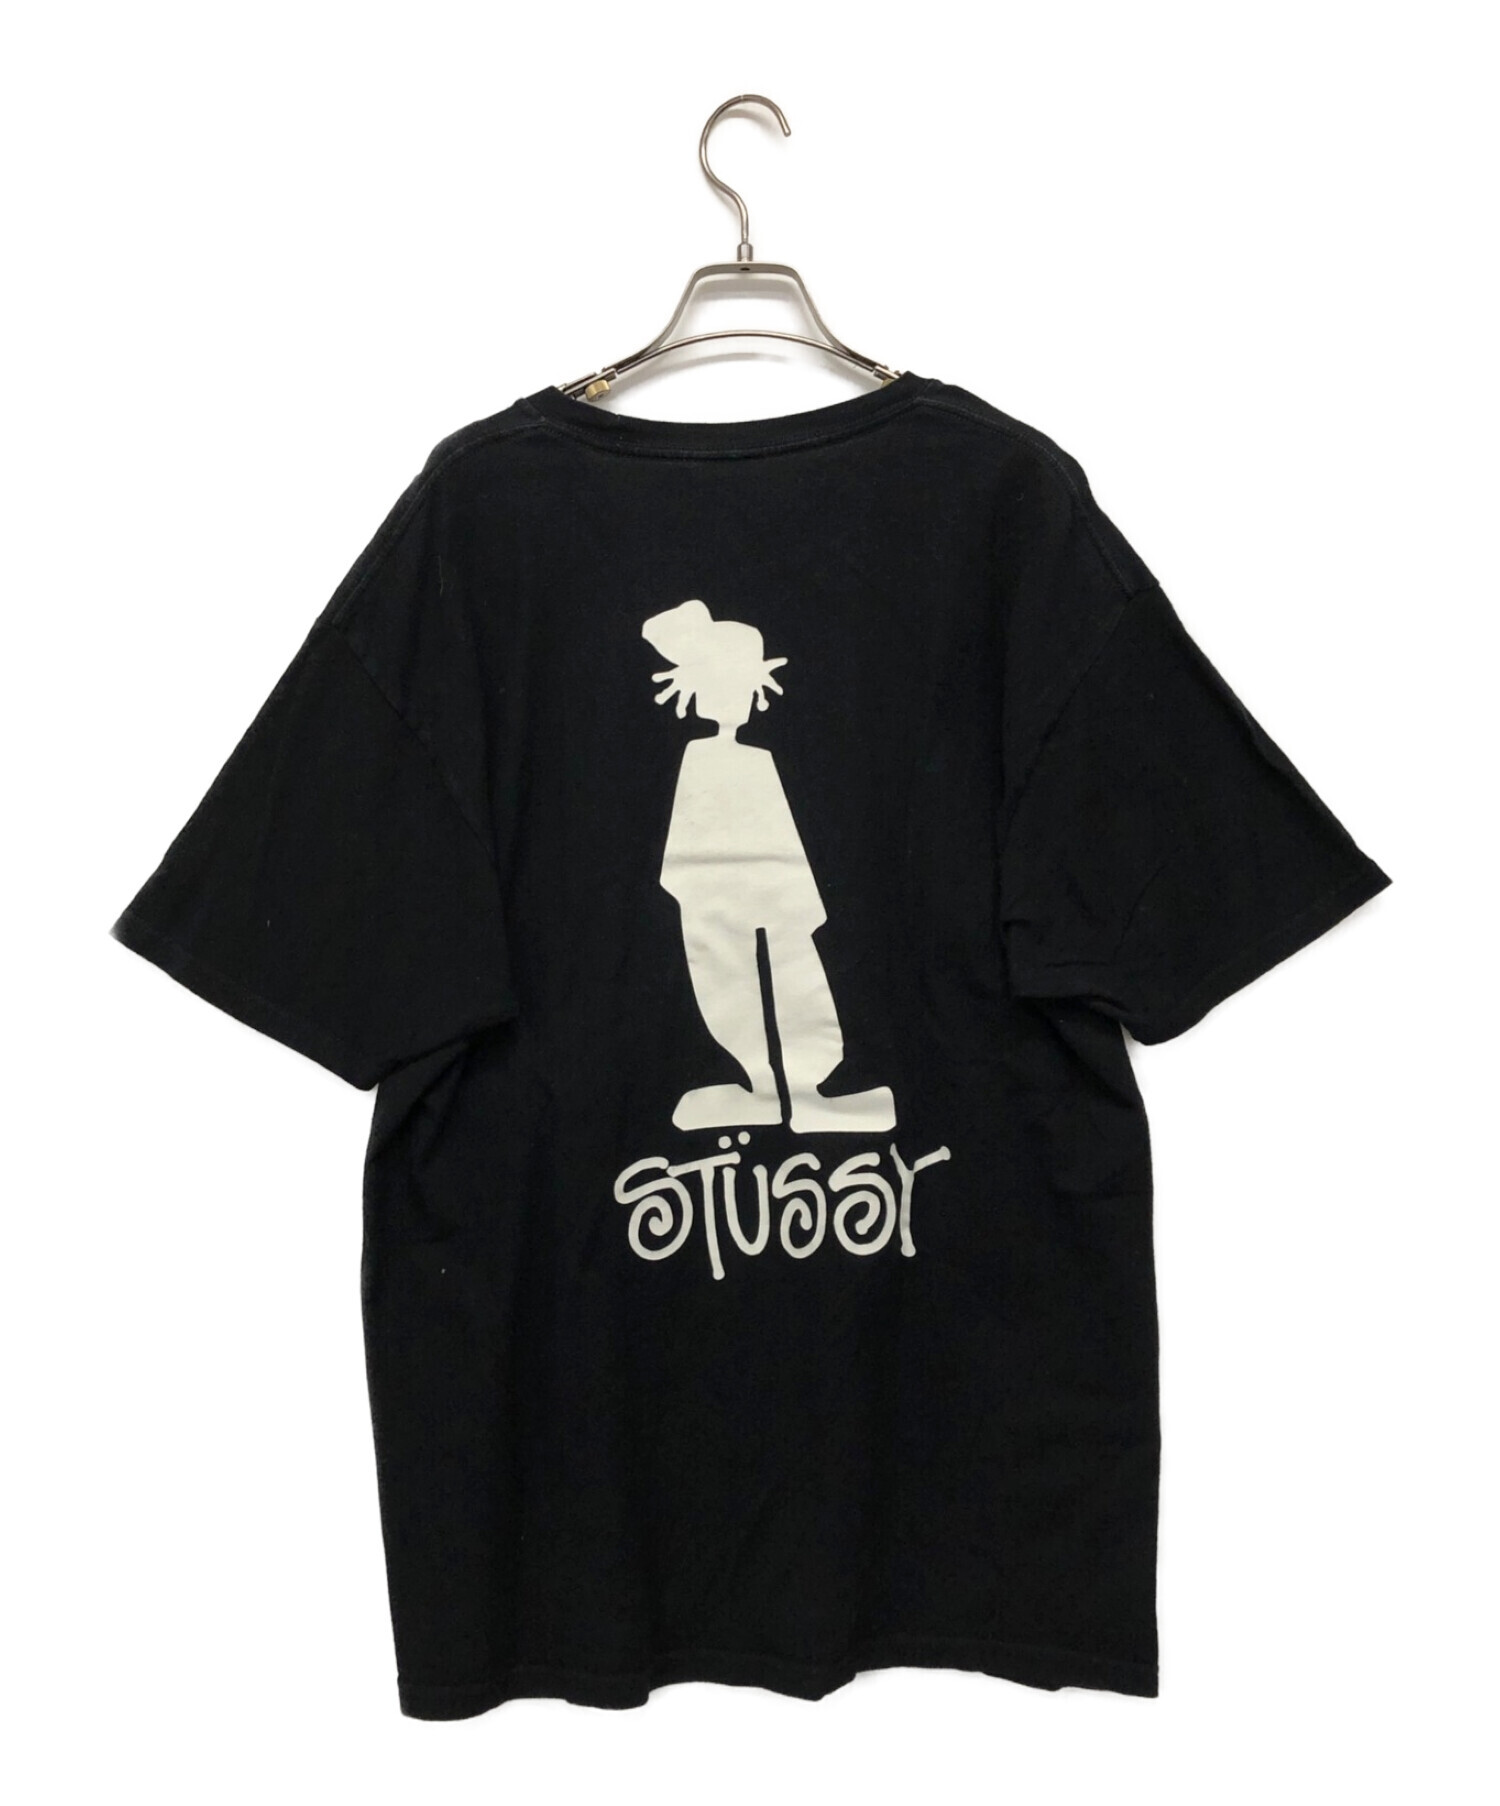 stussy (ステューシー) Tシャツ ブラック サイズ:L